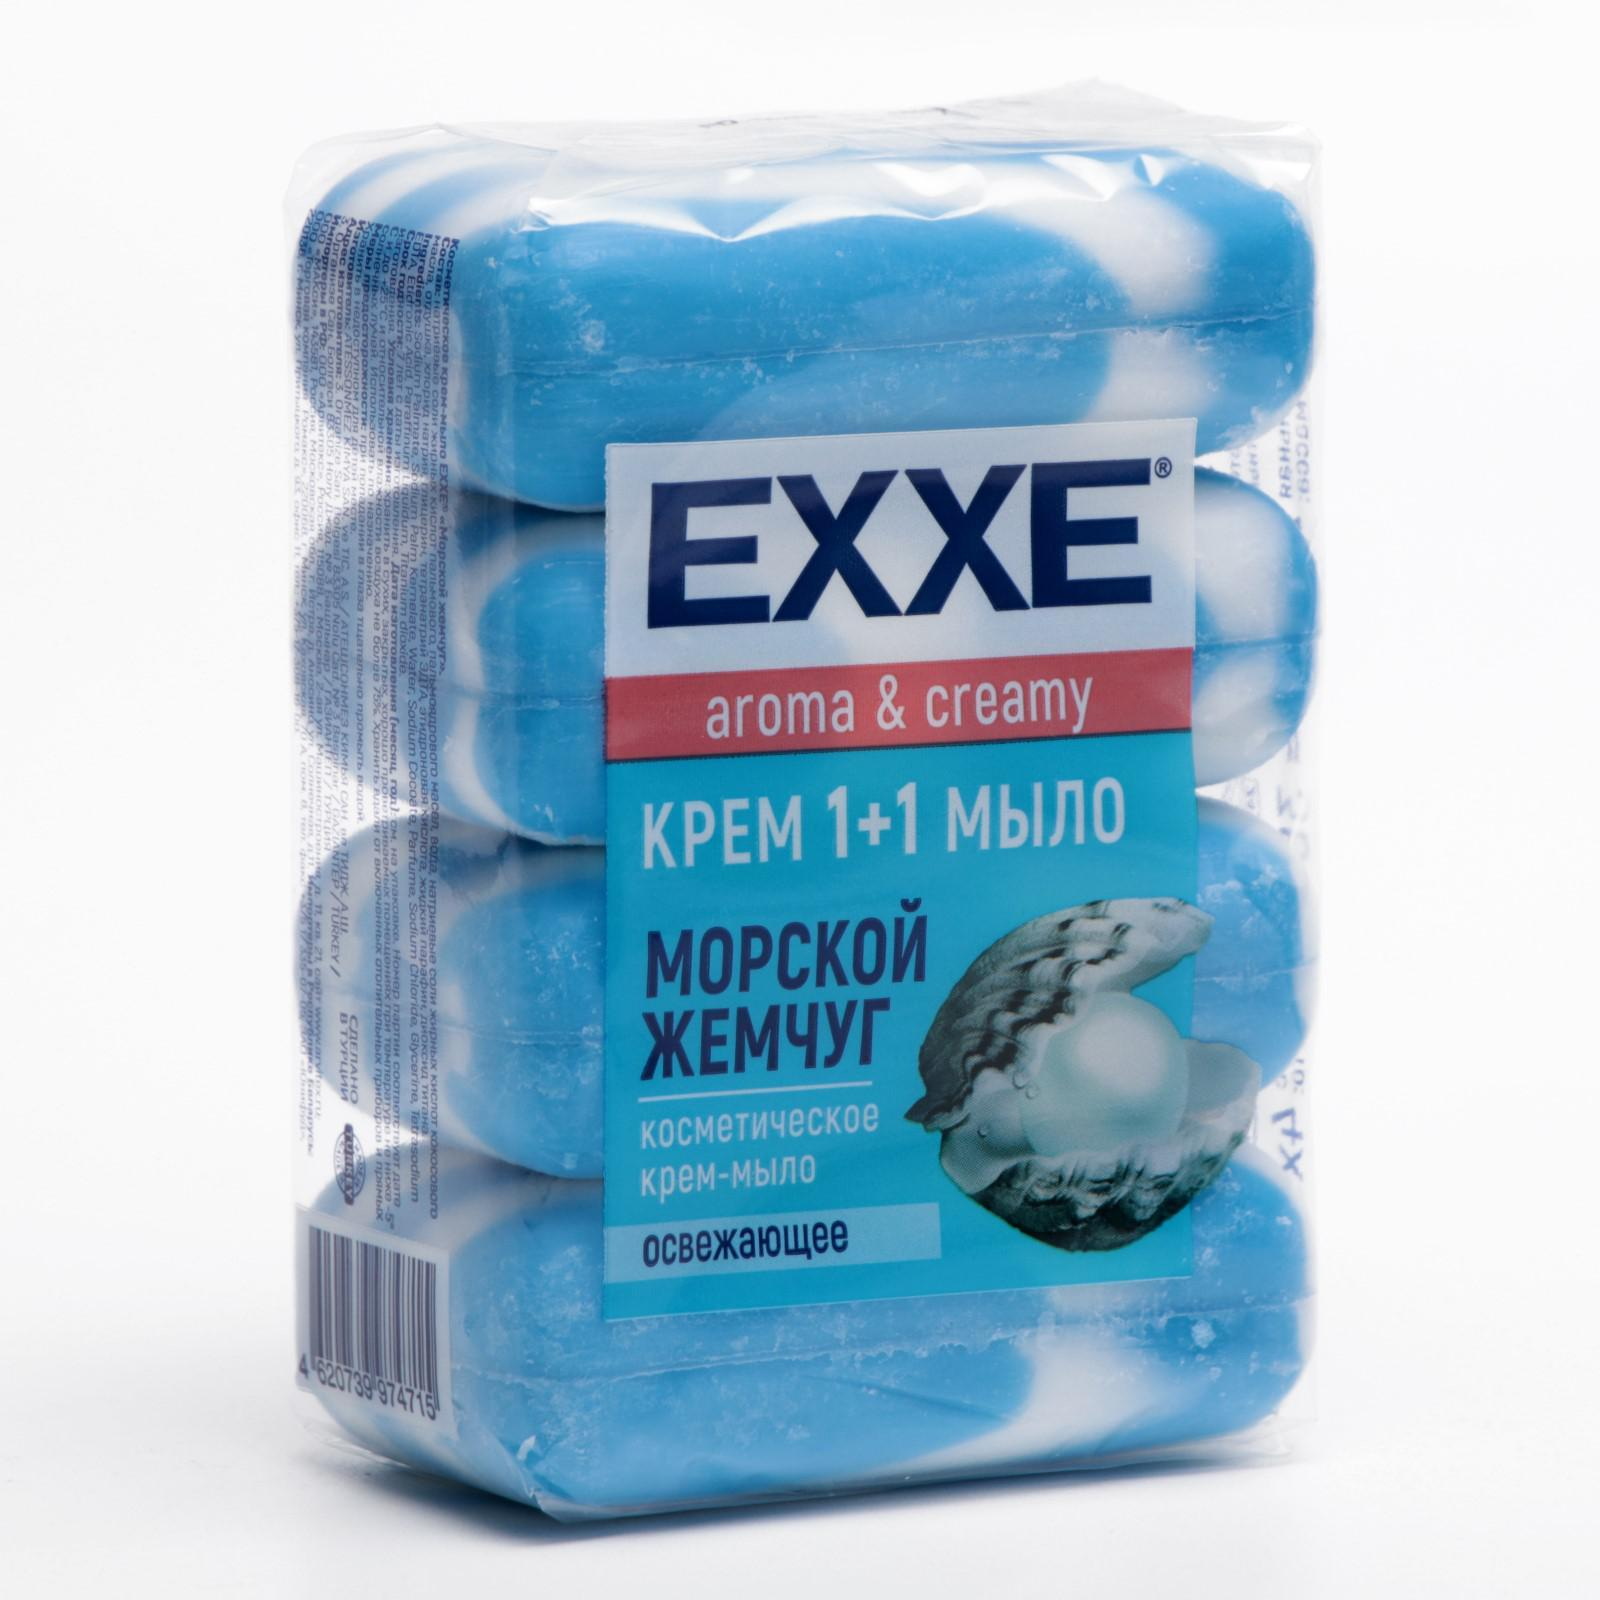 Крем-мыло 1+1 EXXE  "Морской жемчуг" 7493 (4шт.*90г.) (Синее полосатое) Экопак